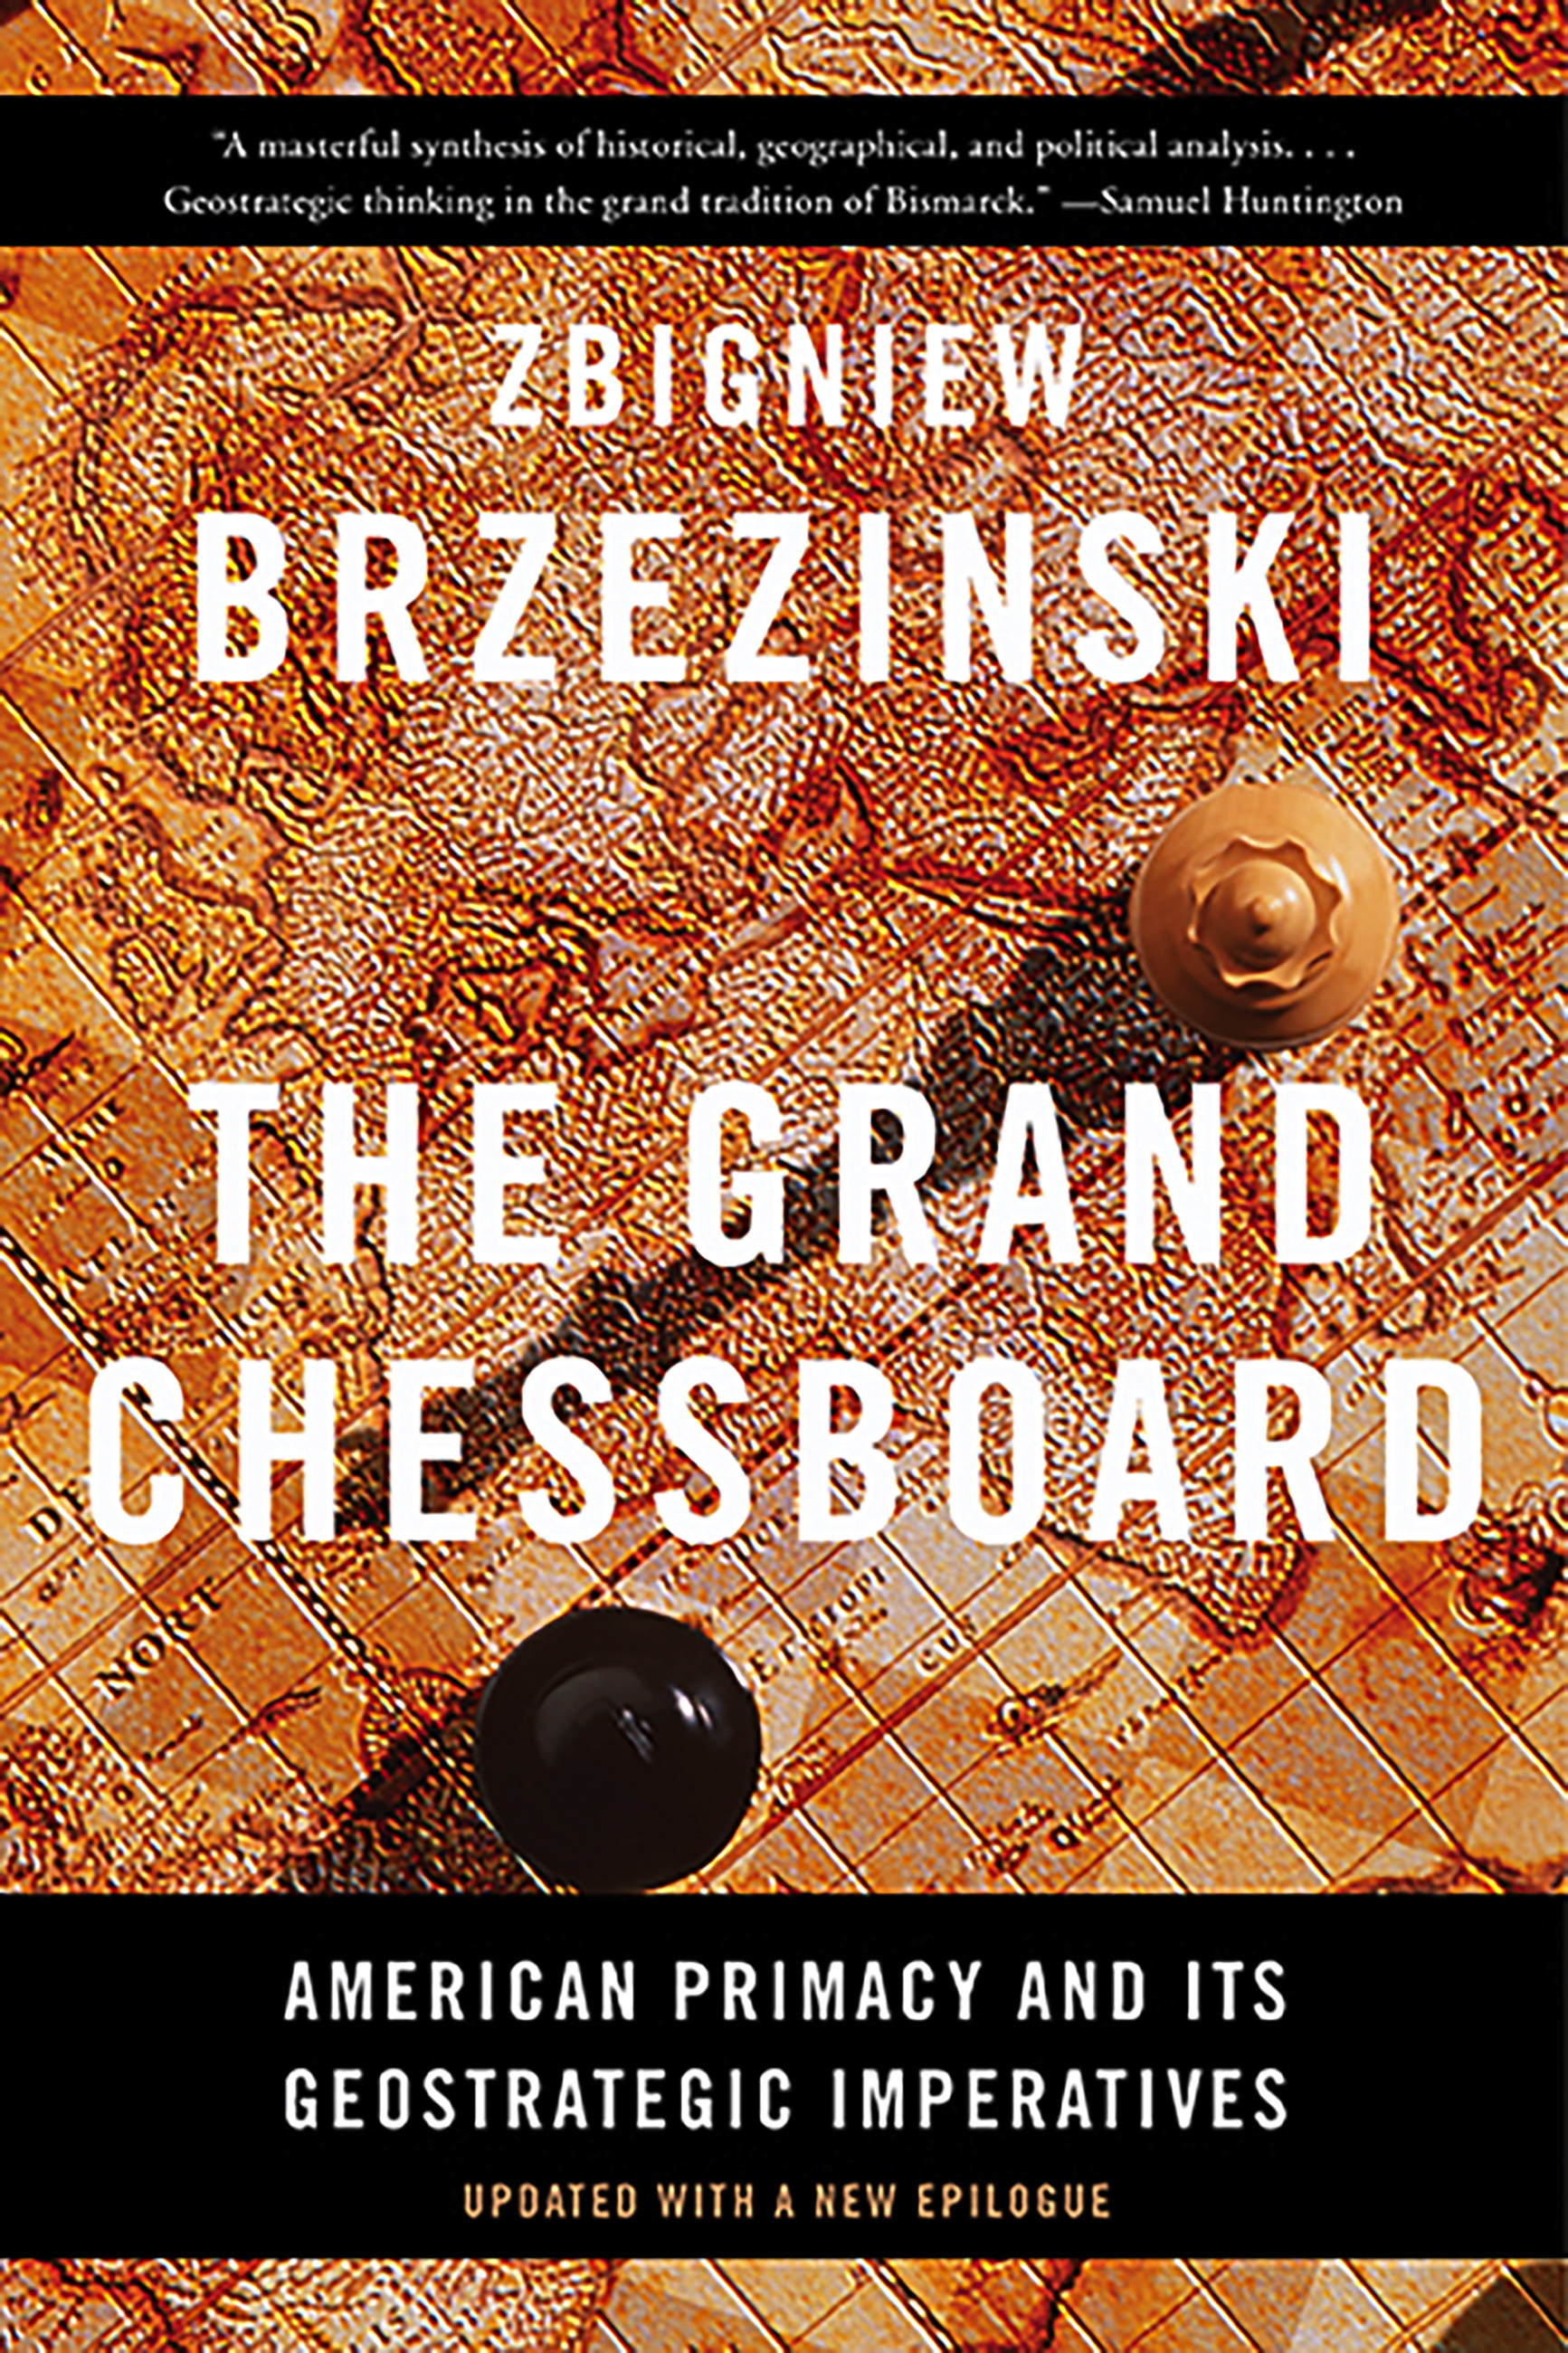 The Grand Chessboard by Zbigniew Brzezinski | Basic Books